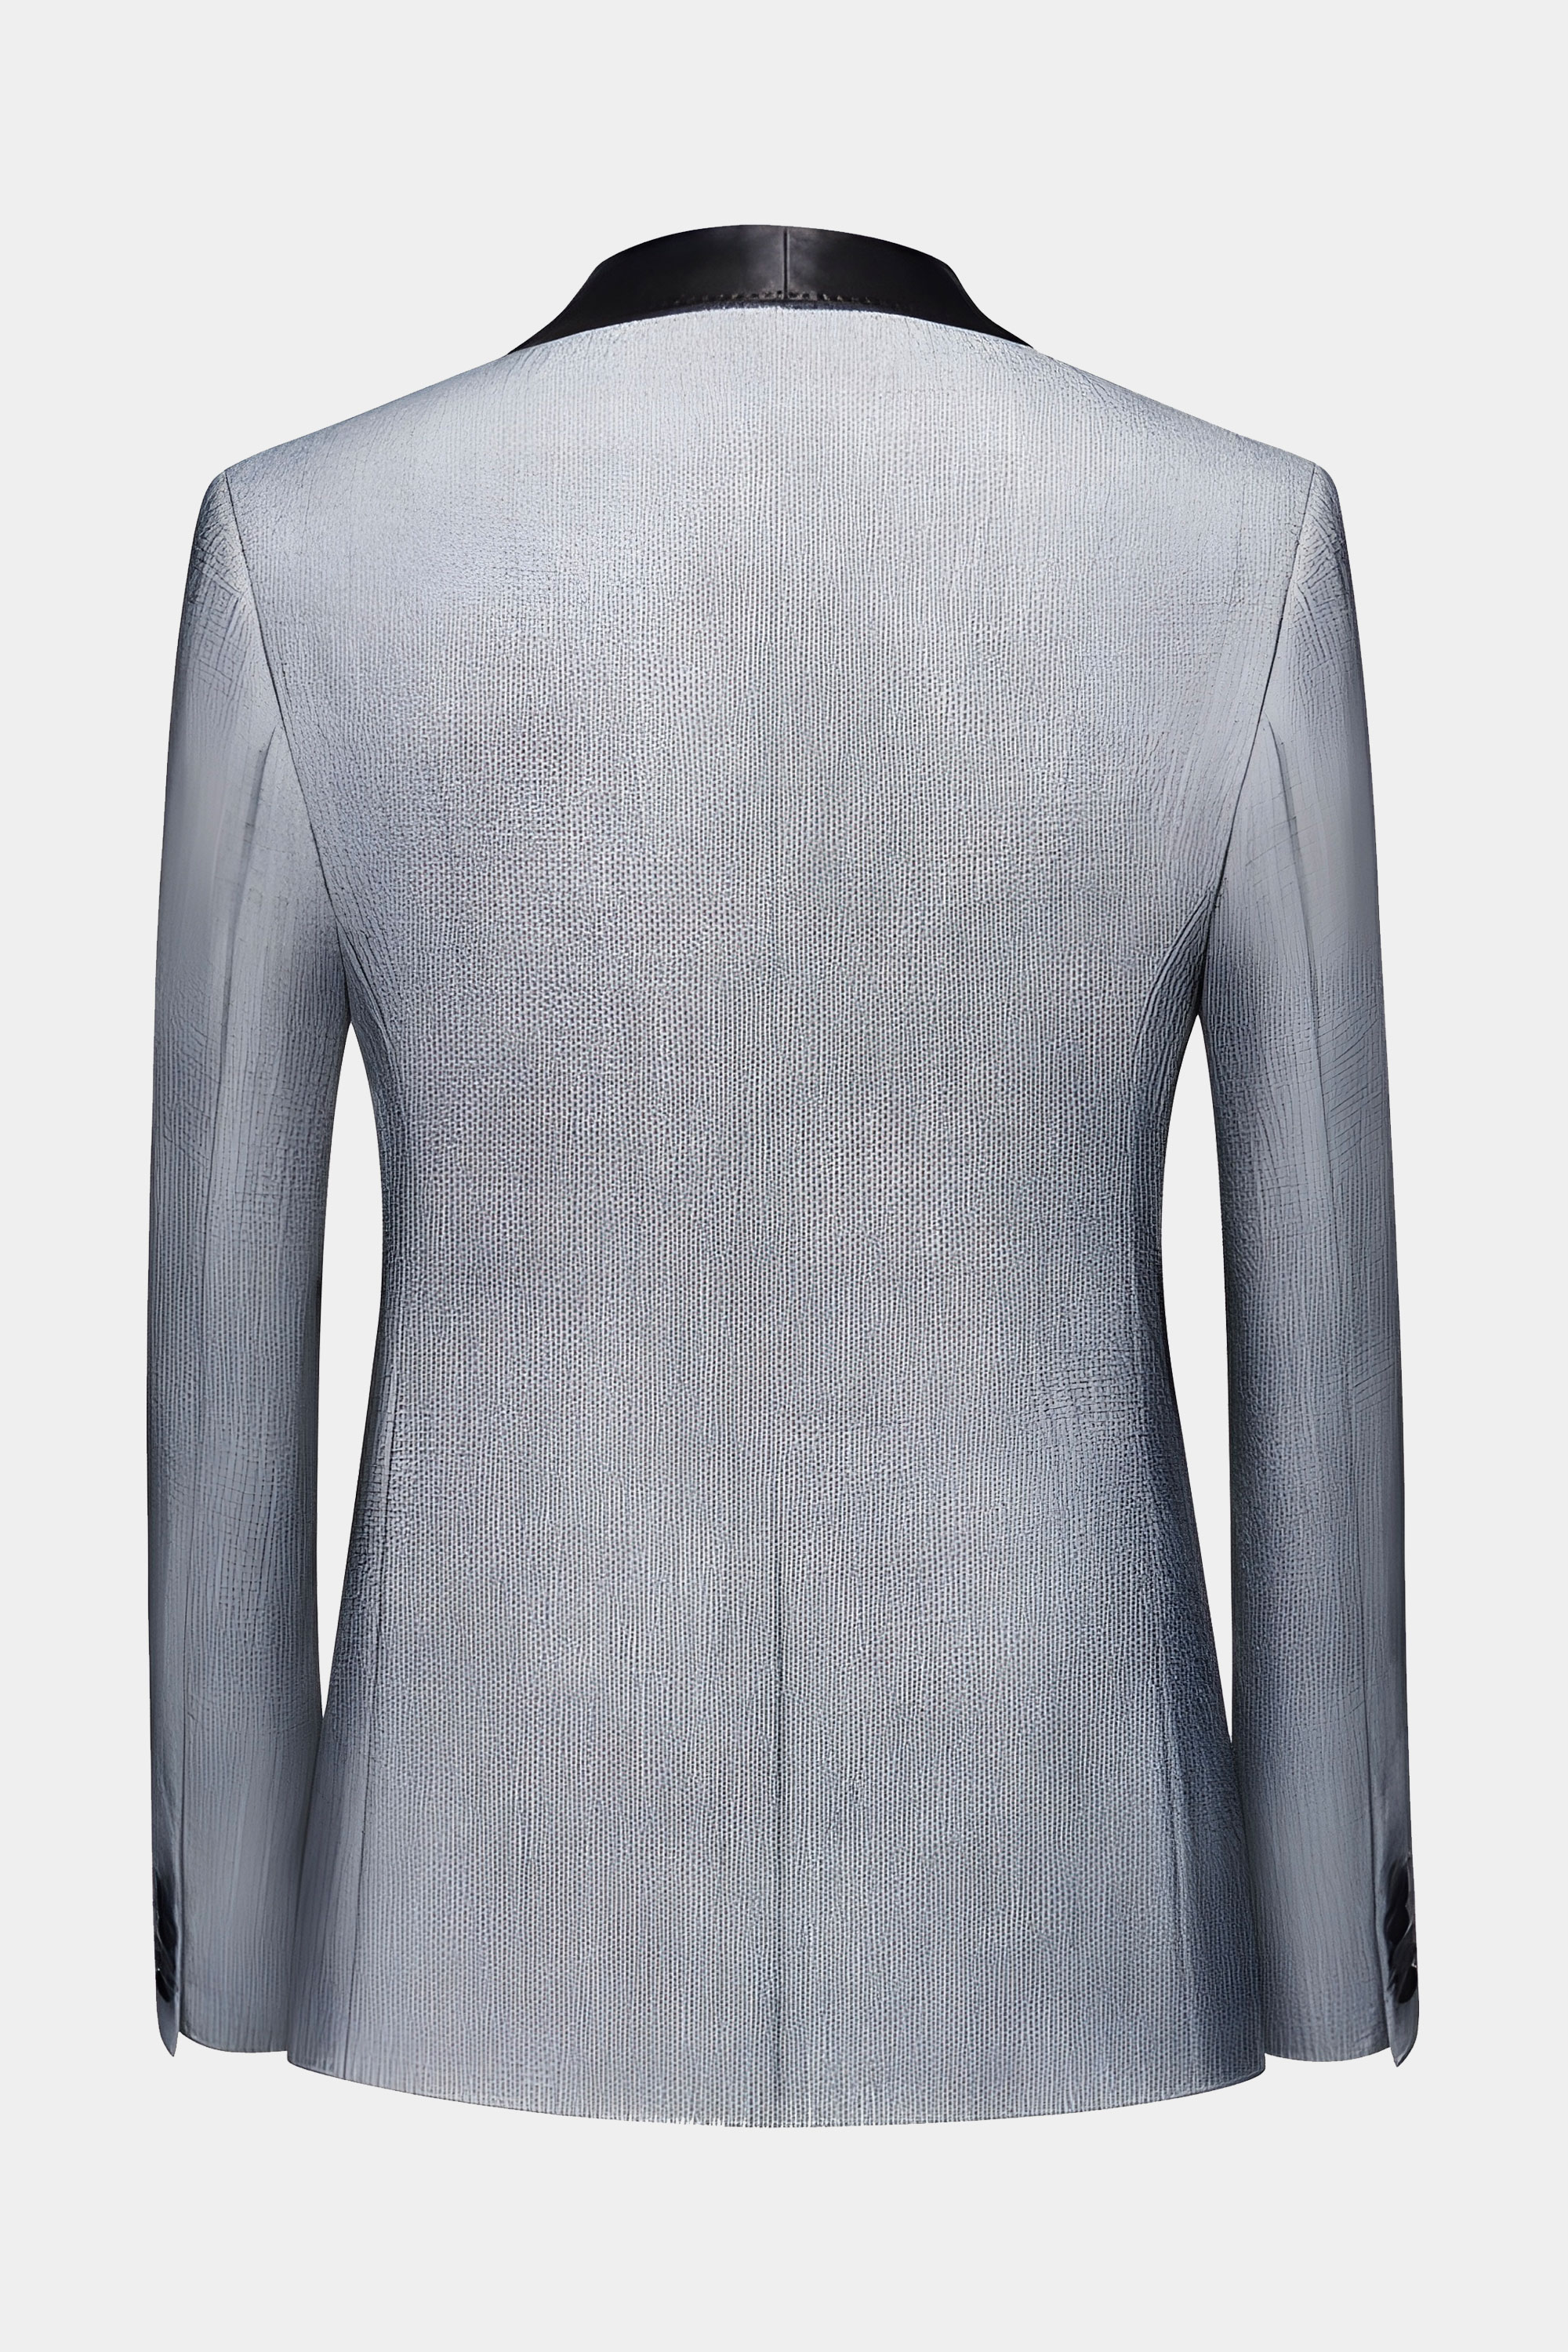 Grey-Tweed-Tuxedo-Jacket-from-Gentlemansguru.com